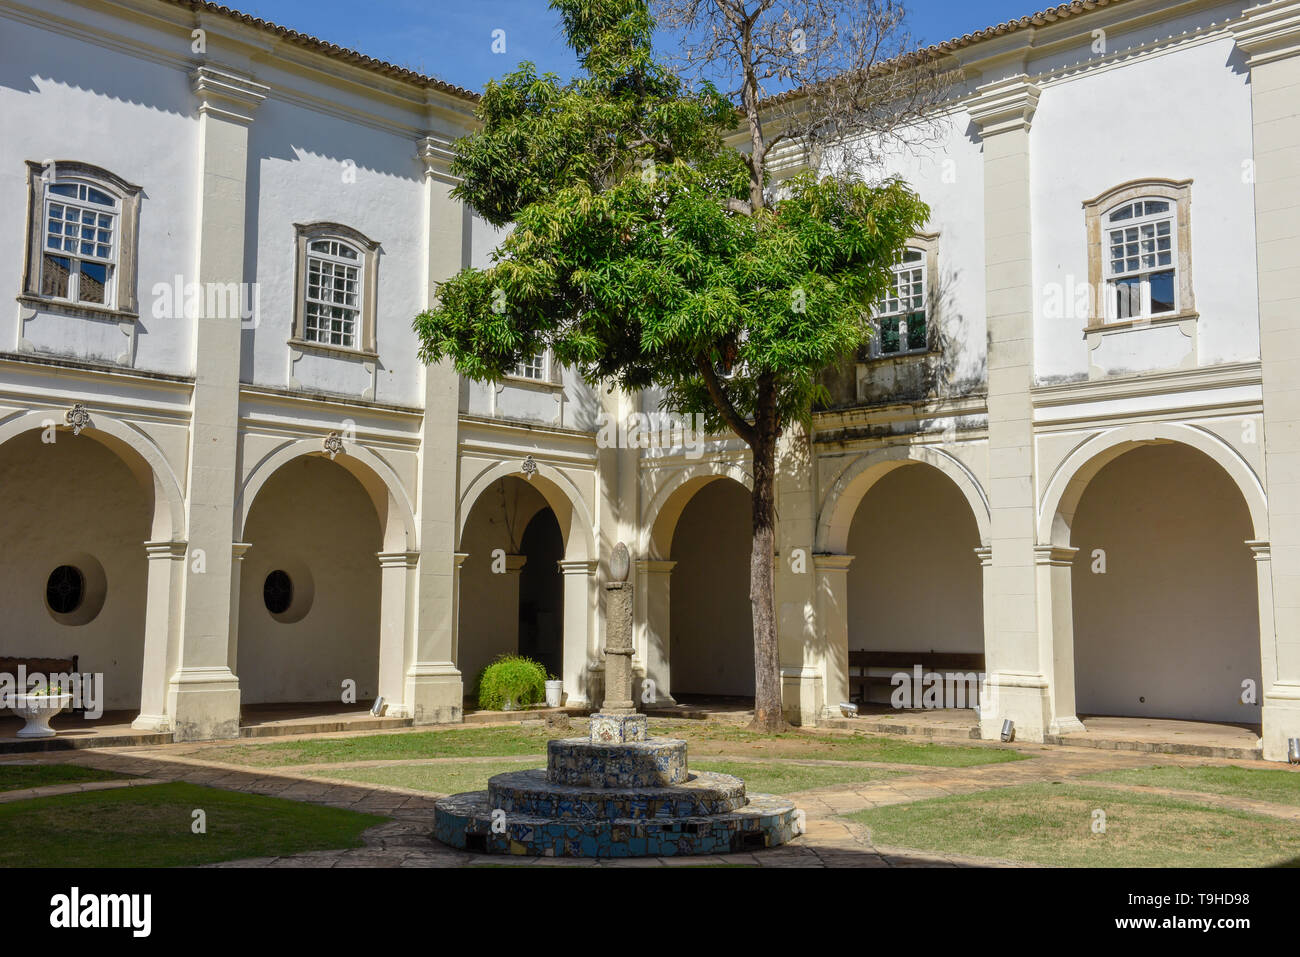 L'architecture coloniale de Pelourinho à Salvador de Bahia au Brésil Banque D'Images